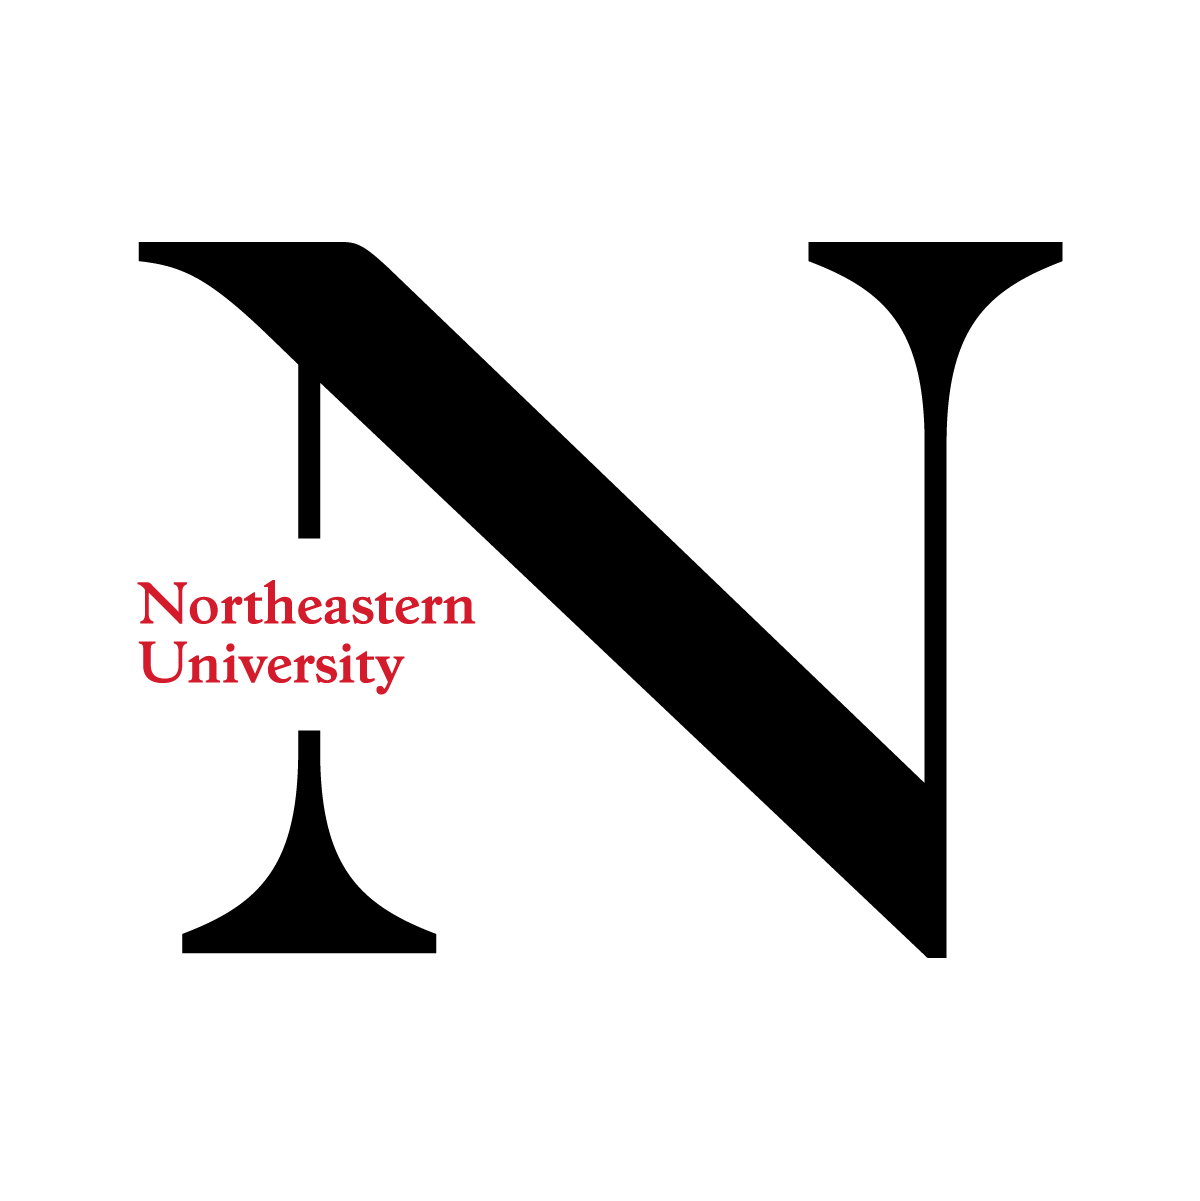 northeastern university